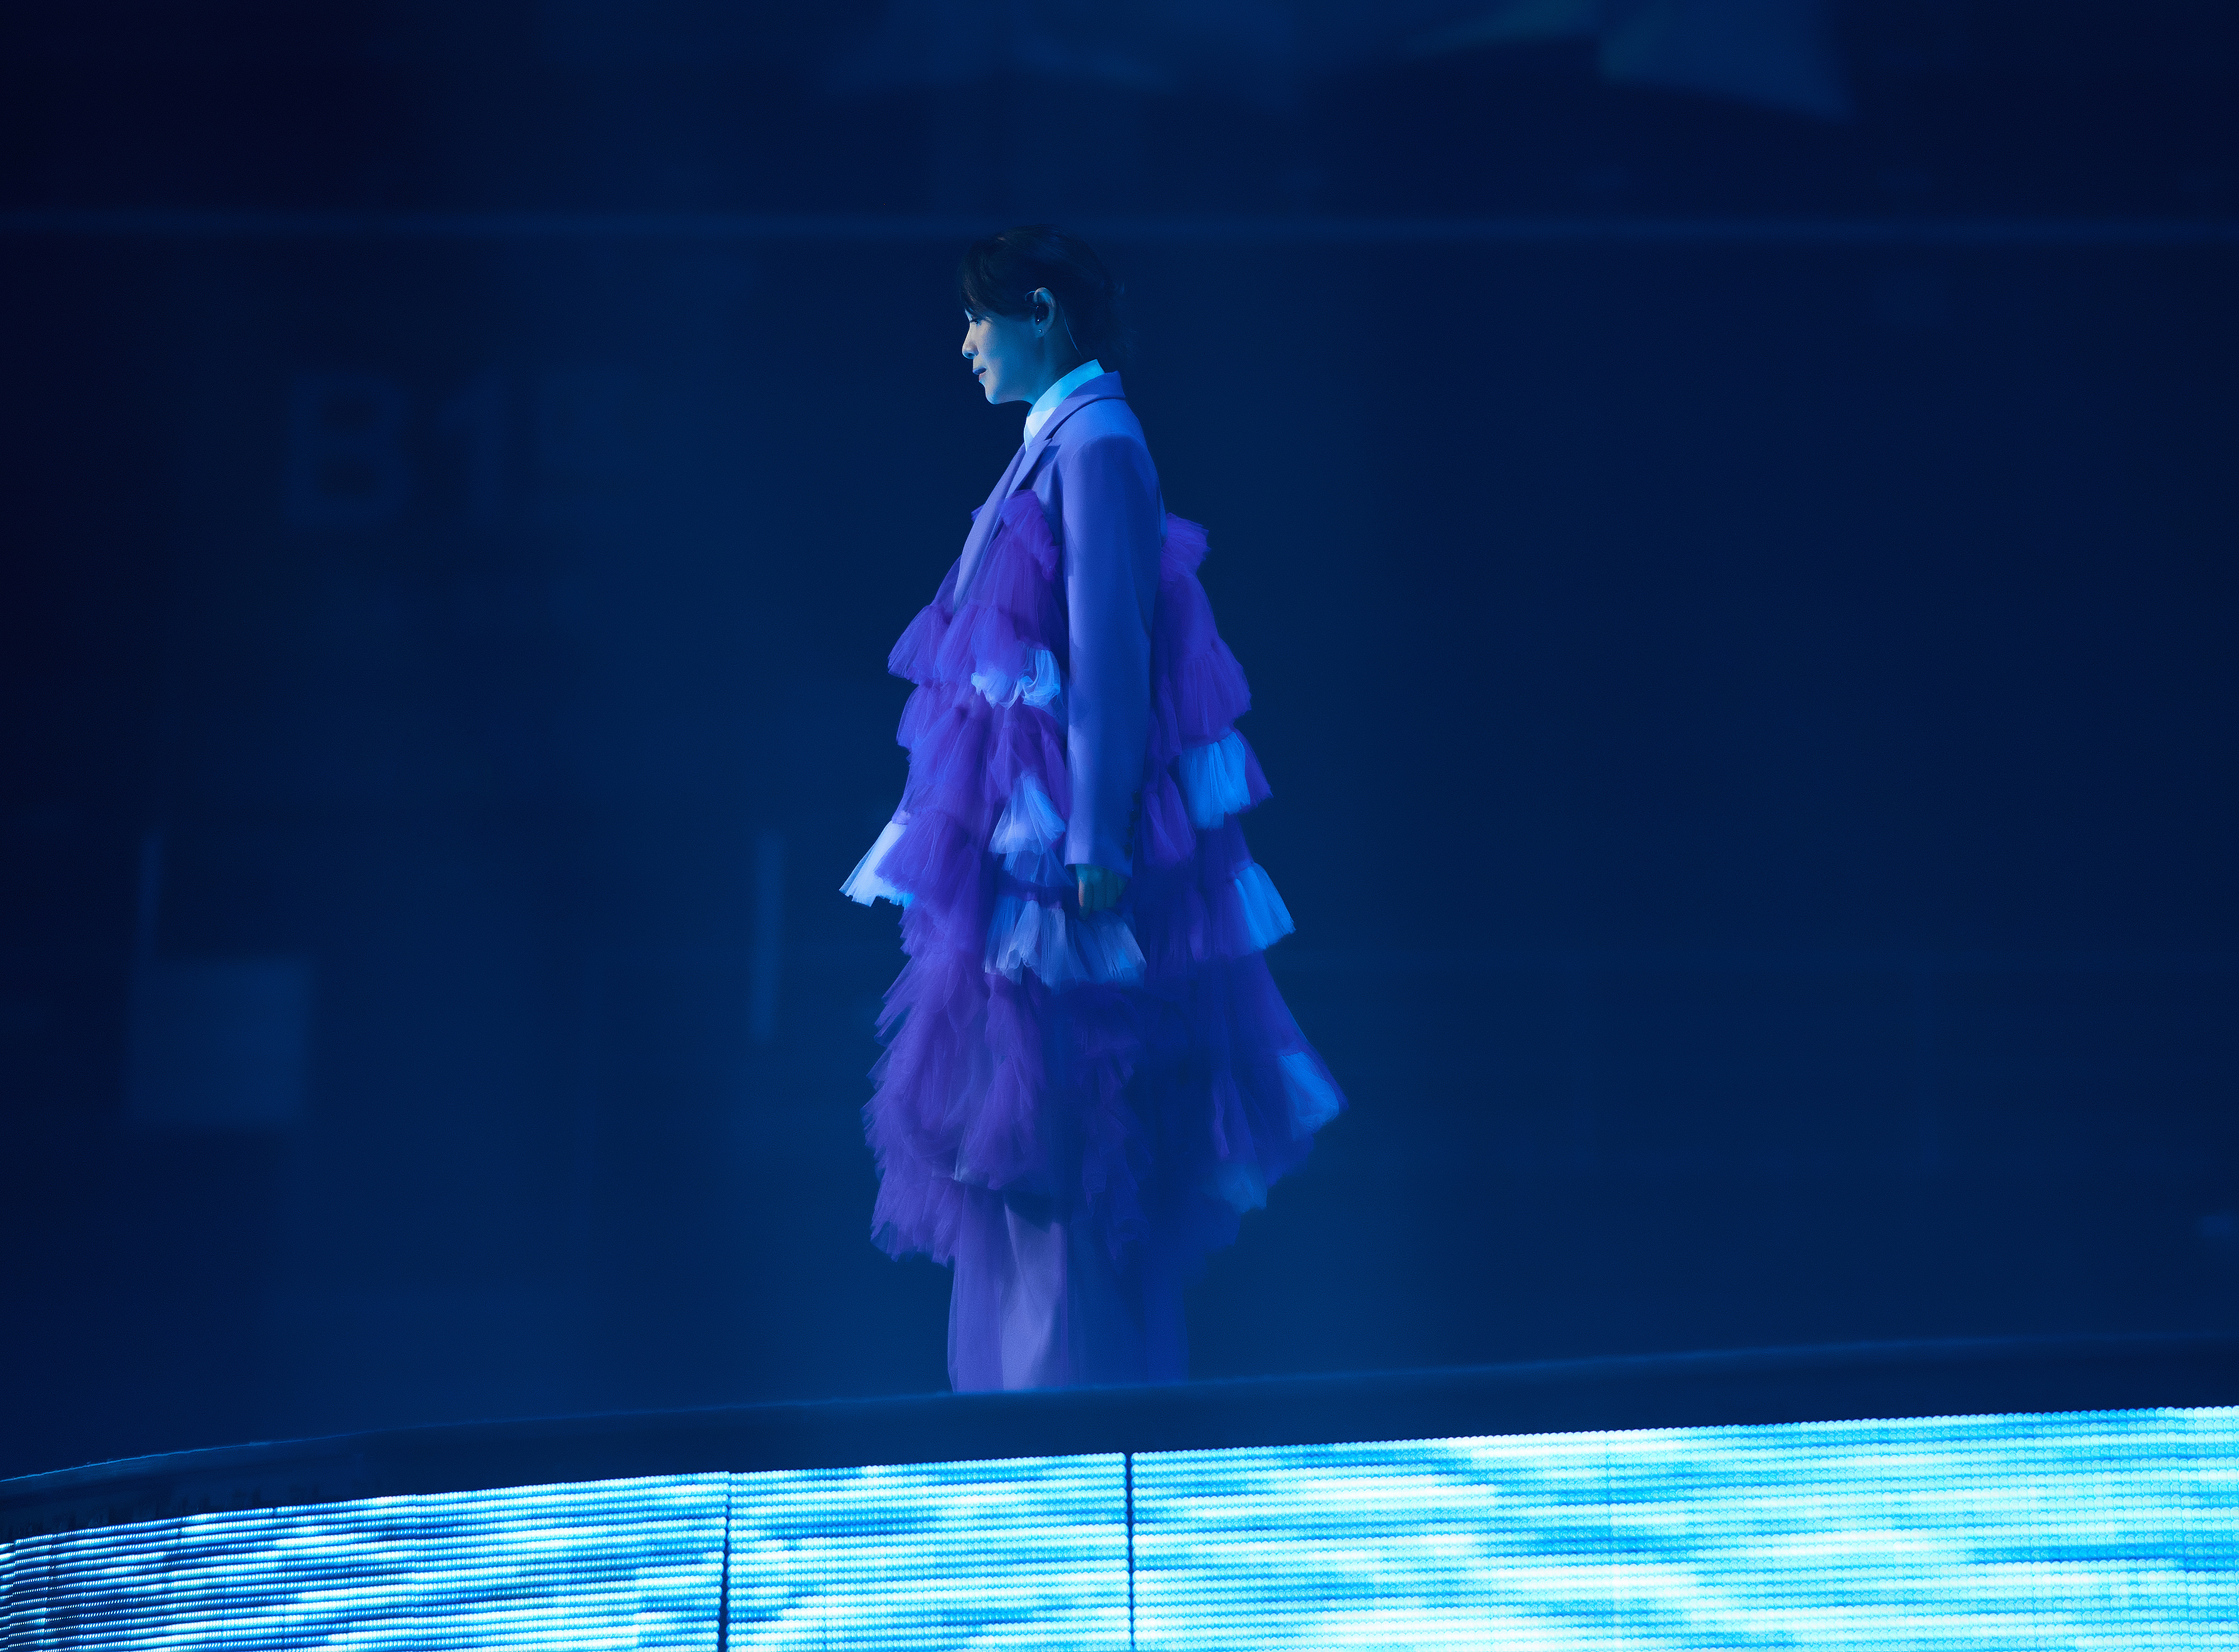 浪漫薰衣草紫色西装纱礼服全新造型亮相 也是此款高定礼服全球首秀.JPG